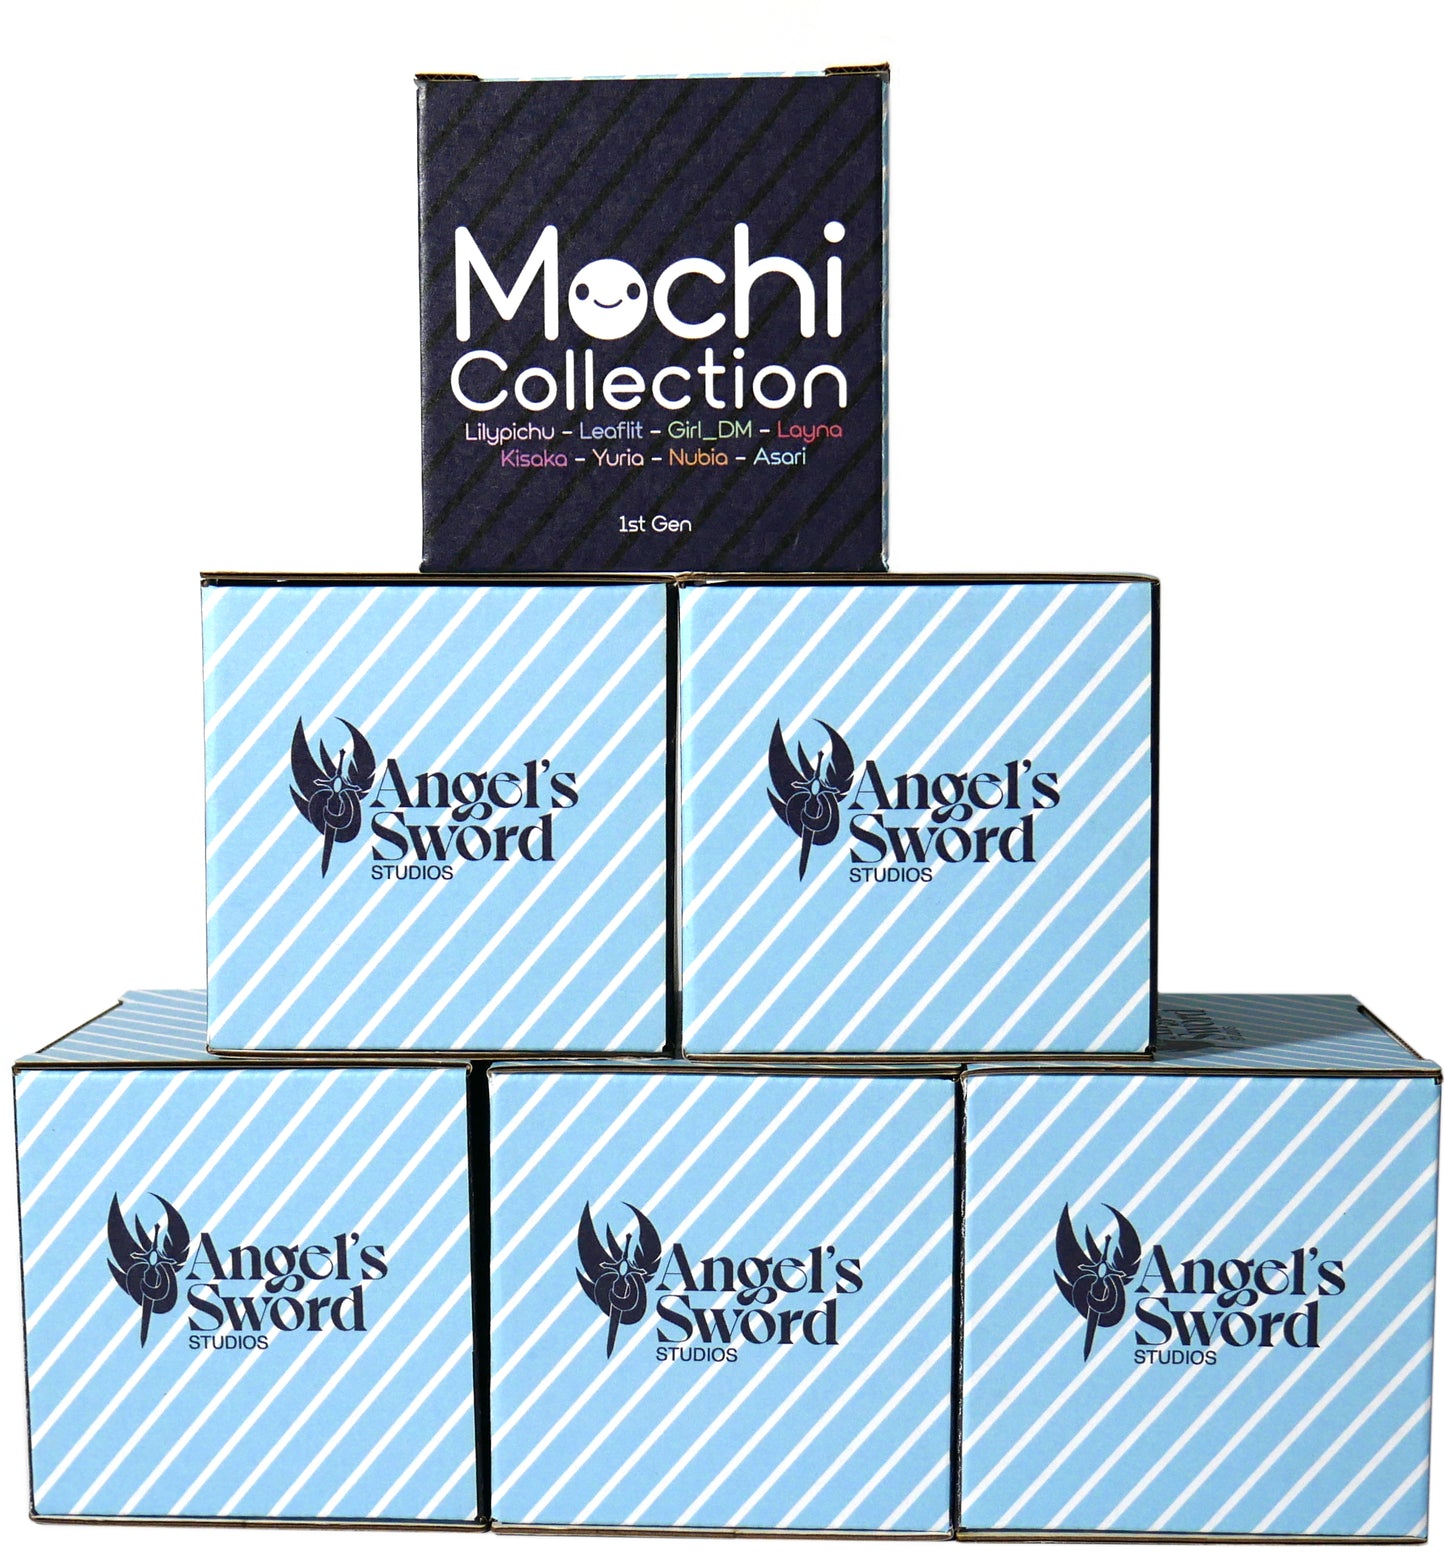 Mochi Collection - Vtuber Blind Box